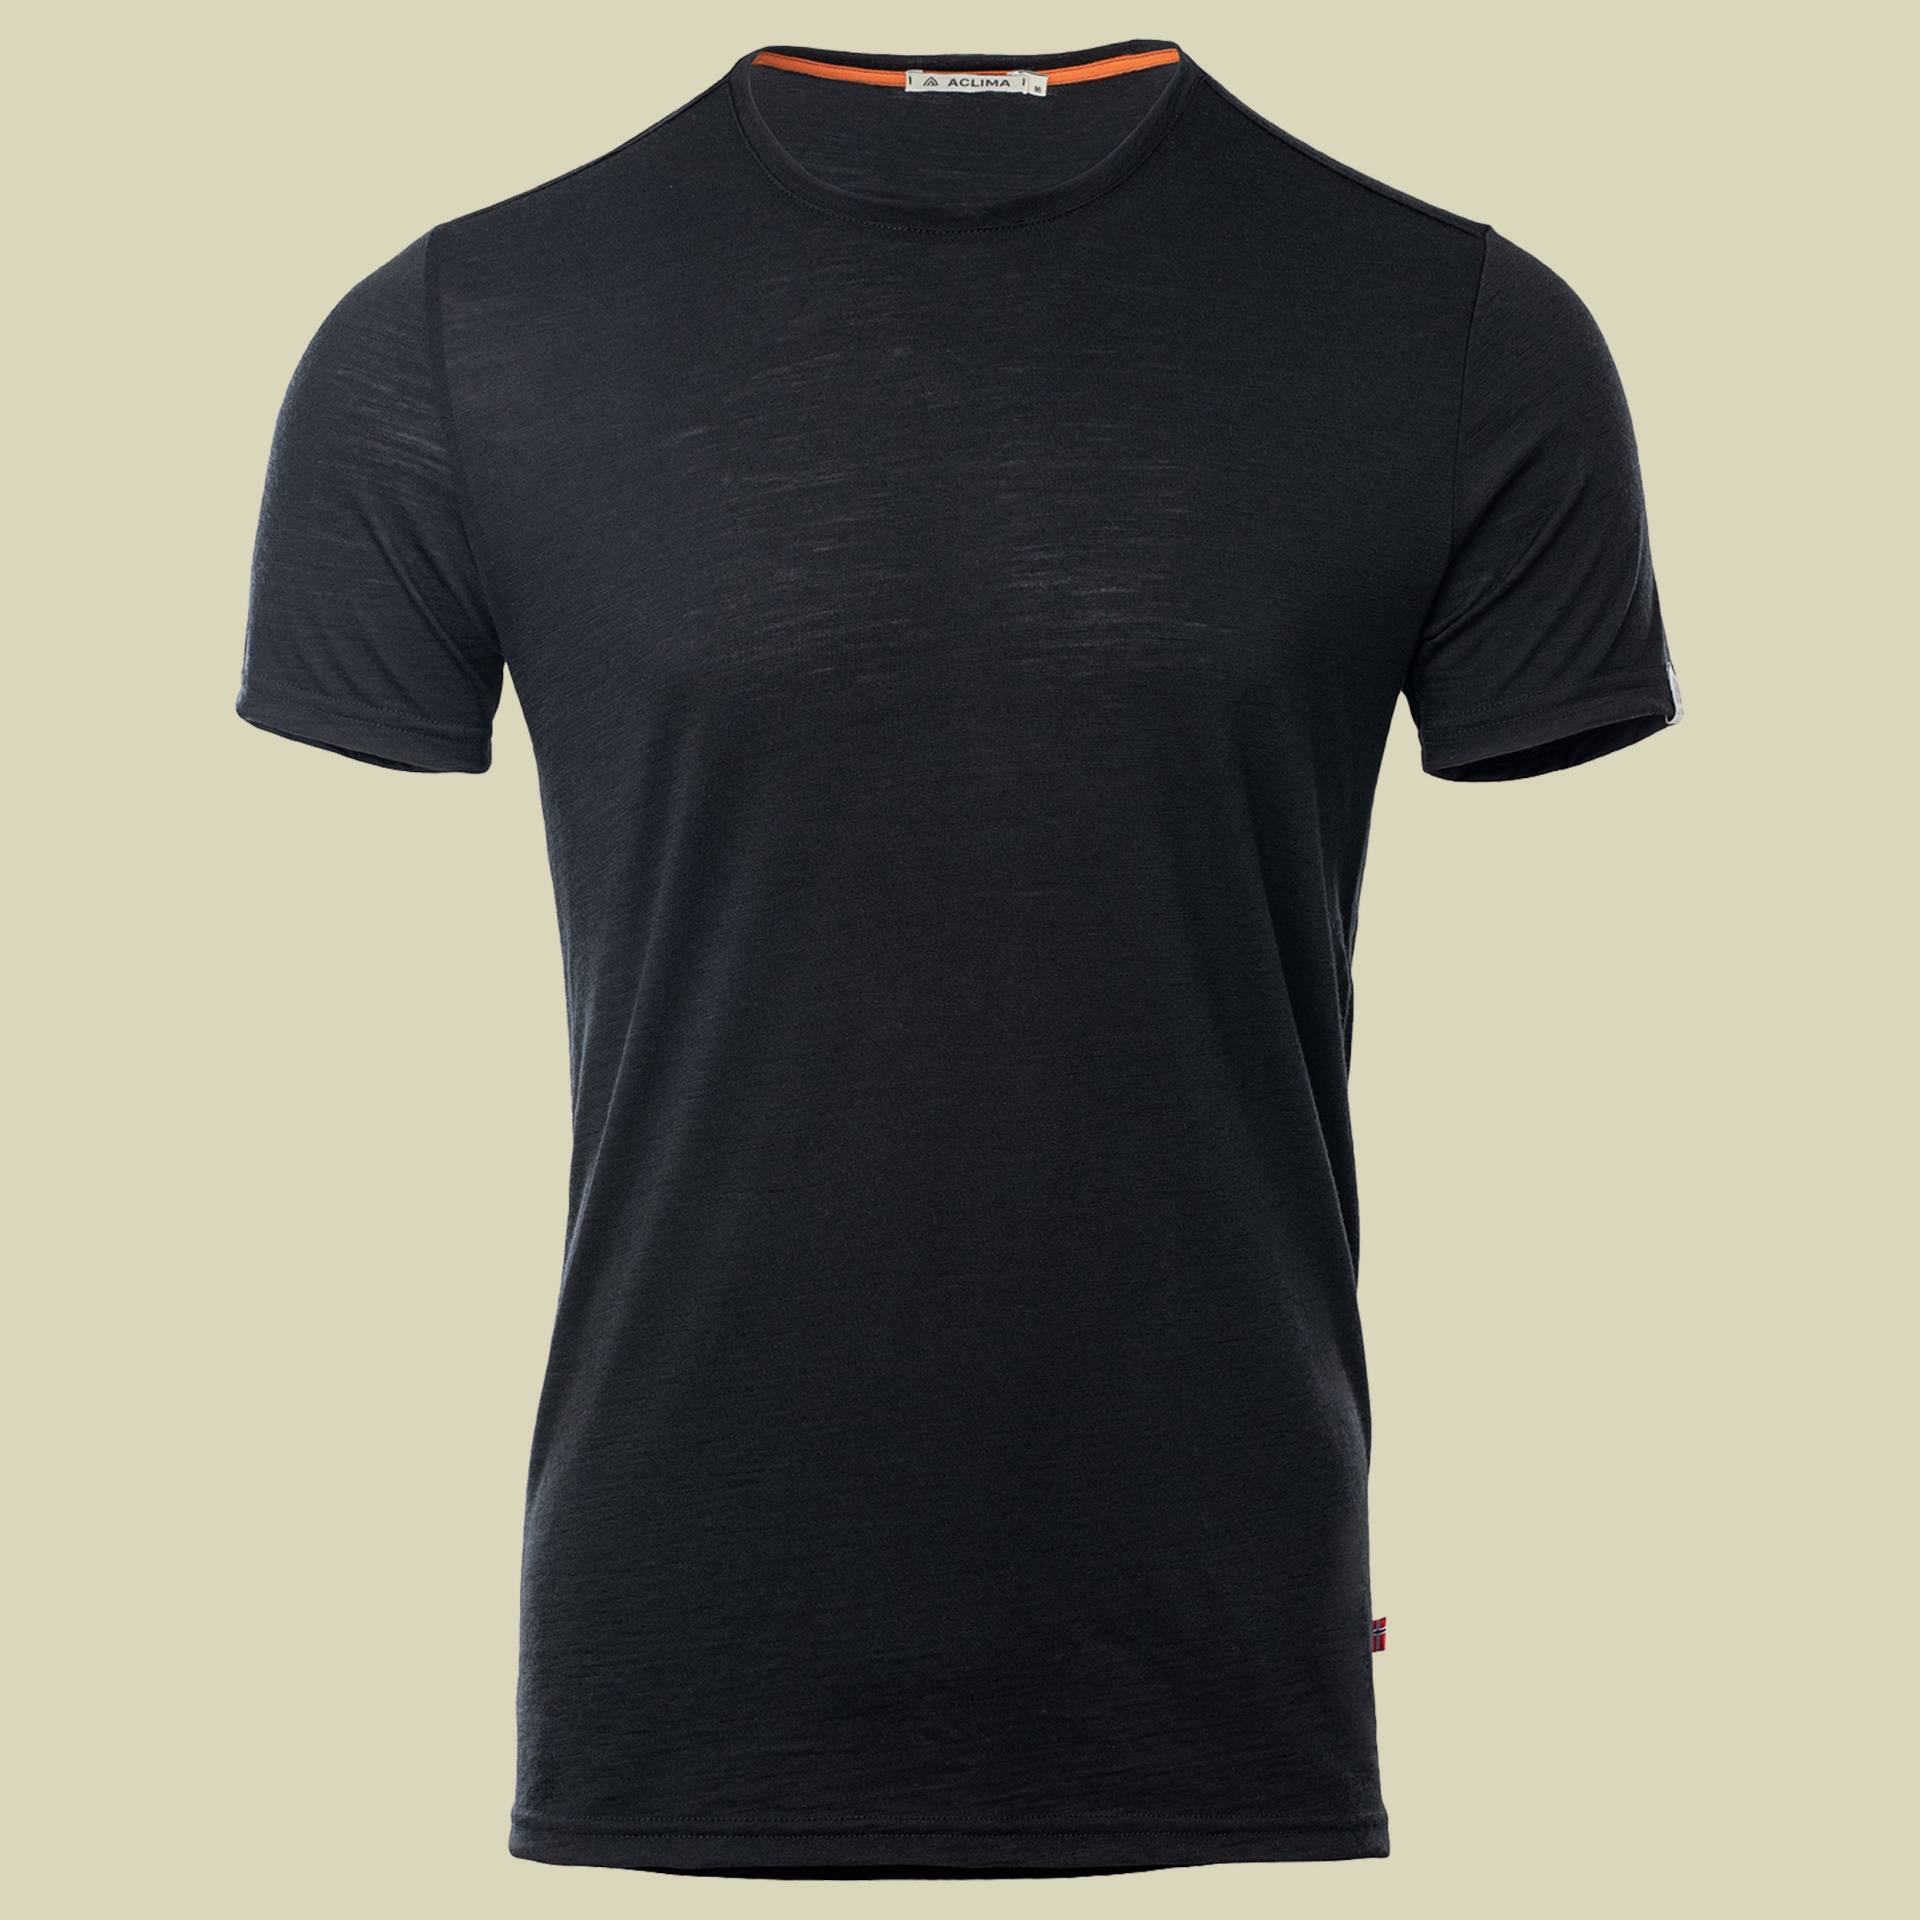 LightWool T-Shirt Men schwarz XL - jet black von aclima